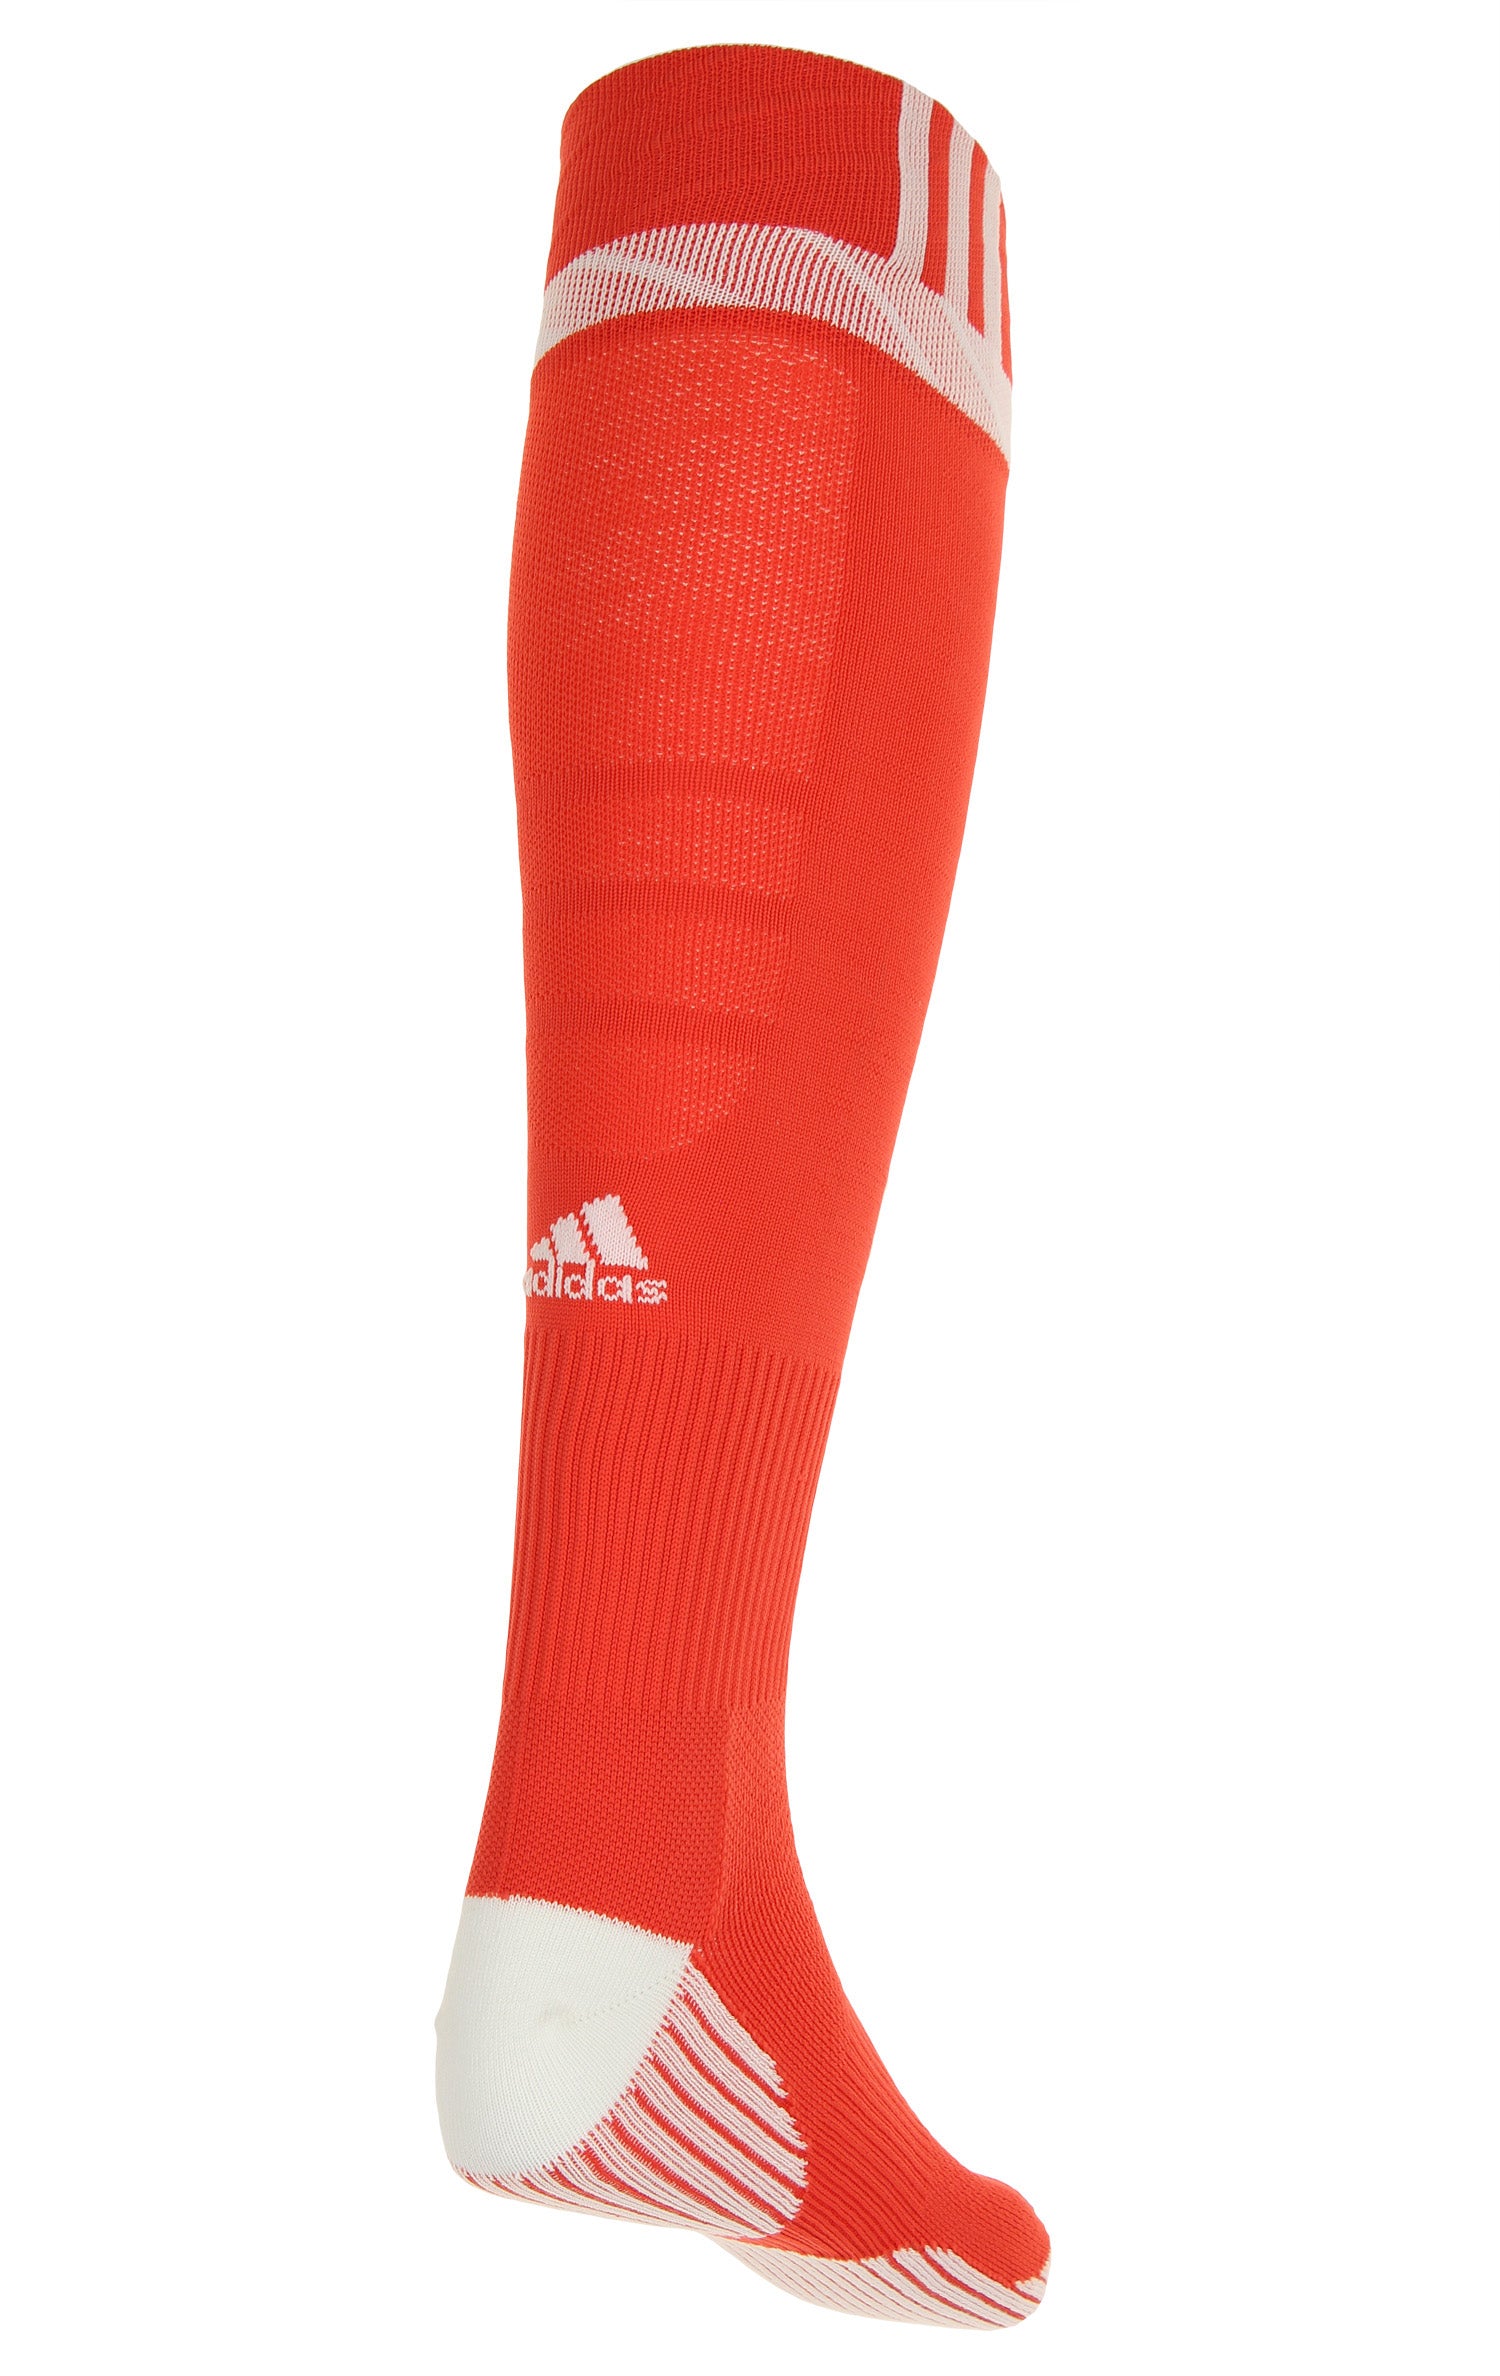 adidas traxion premier soccer socks